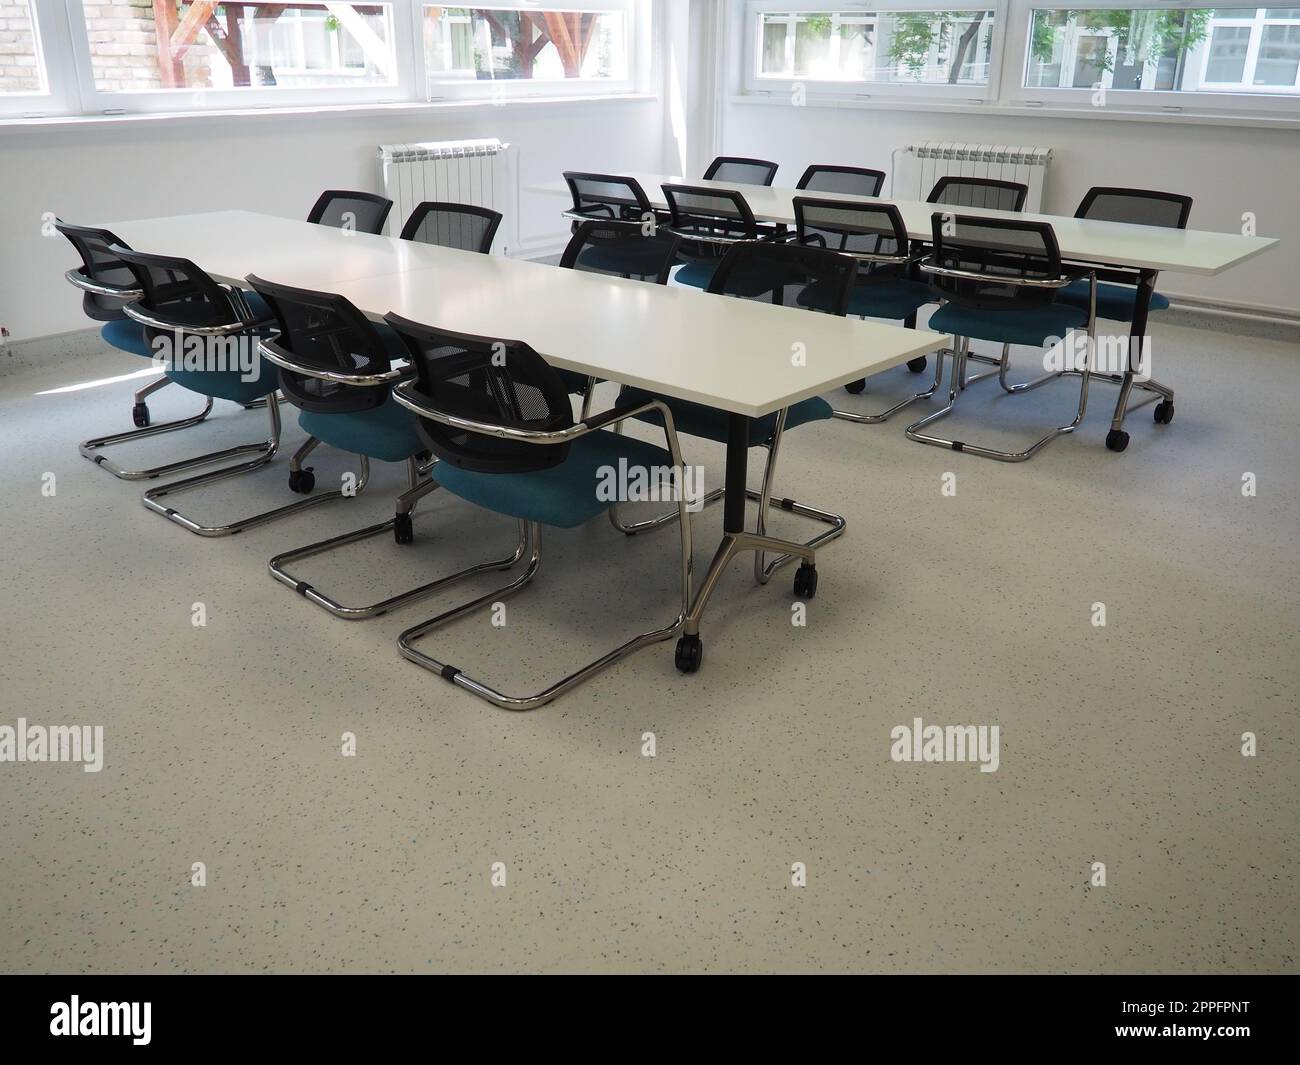 table et chaises dans la salle de réunion dans le bureau, dans la salle de classe ou dans la salle de bibliothèque. Peintures blanches, noires et grises à l'intérieur. Stores noirs pour obscurcir la pièce. Design intérieur moderne Banque D'Images